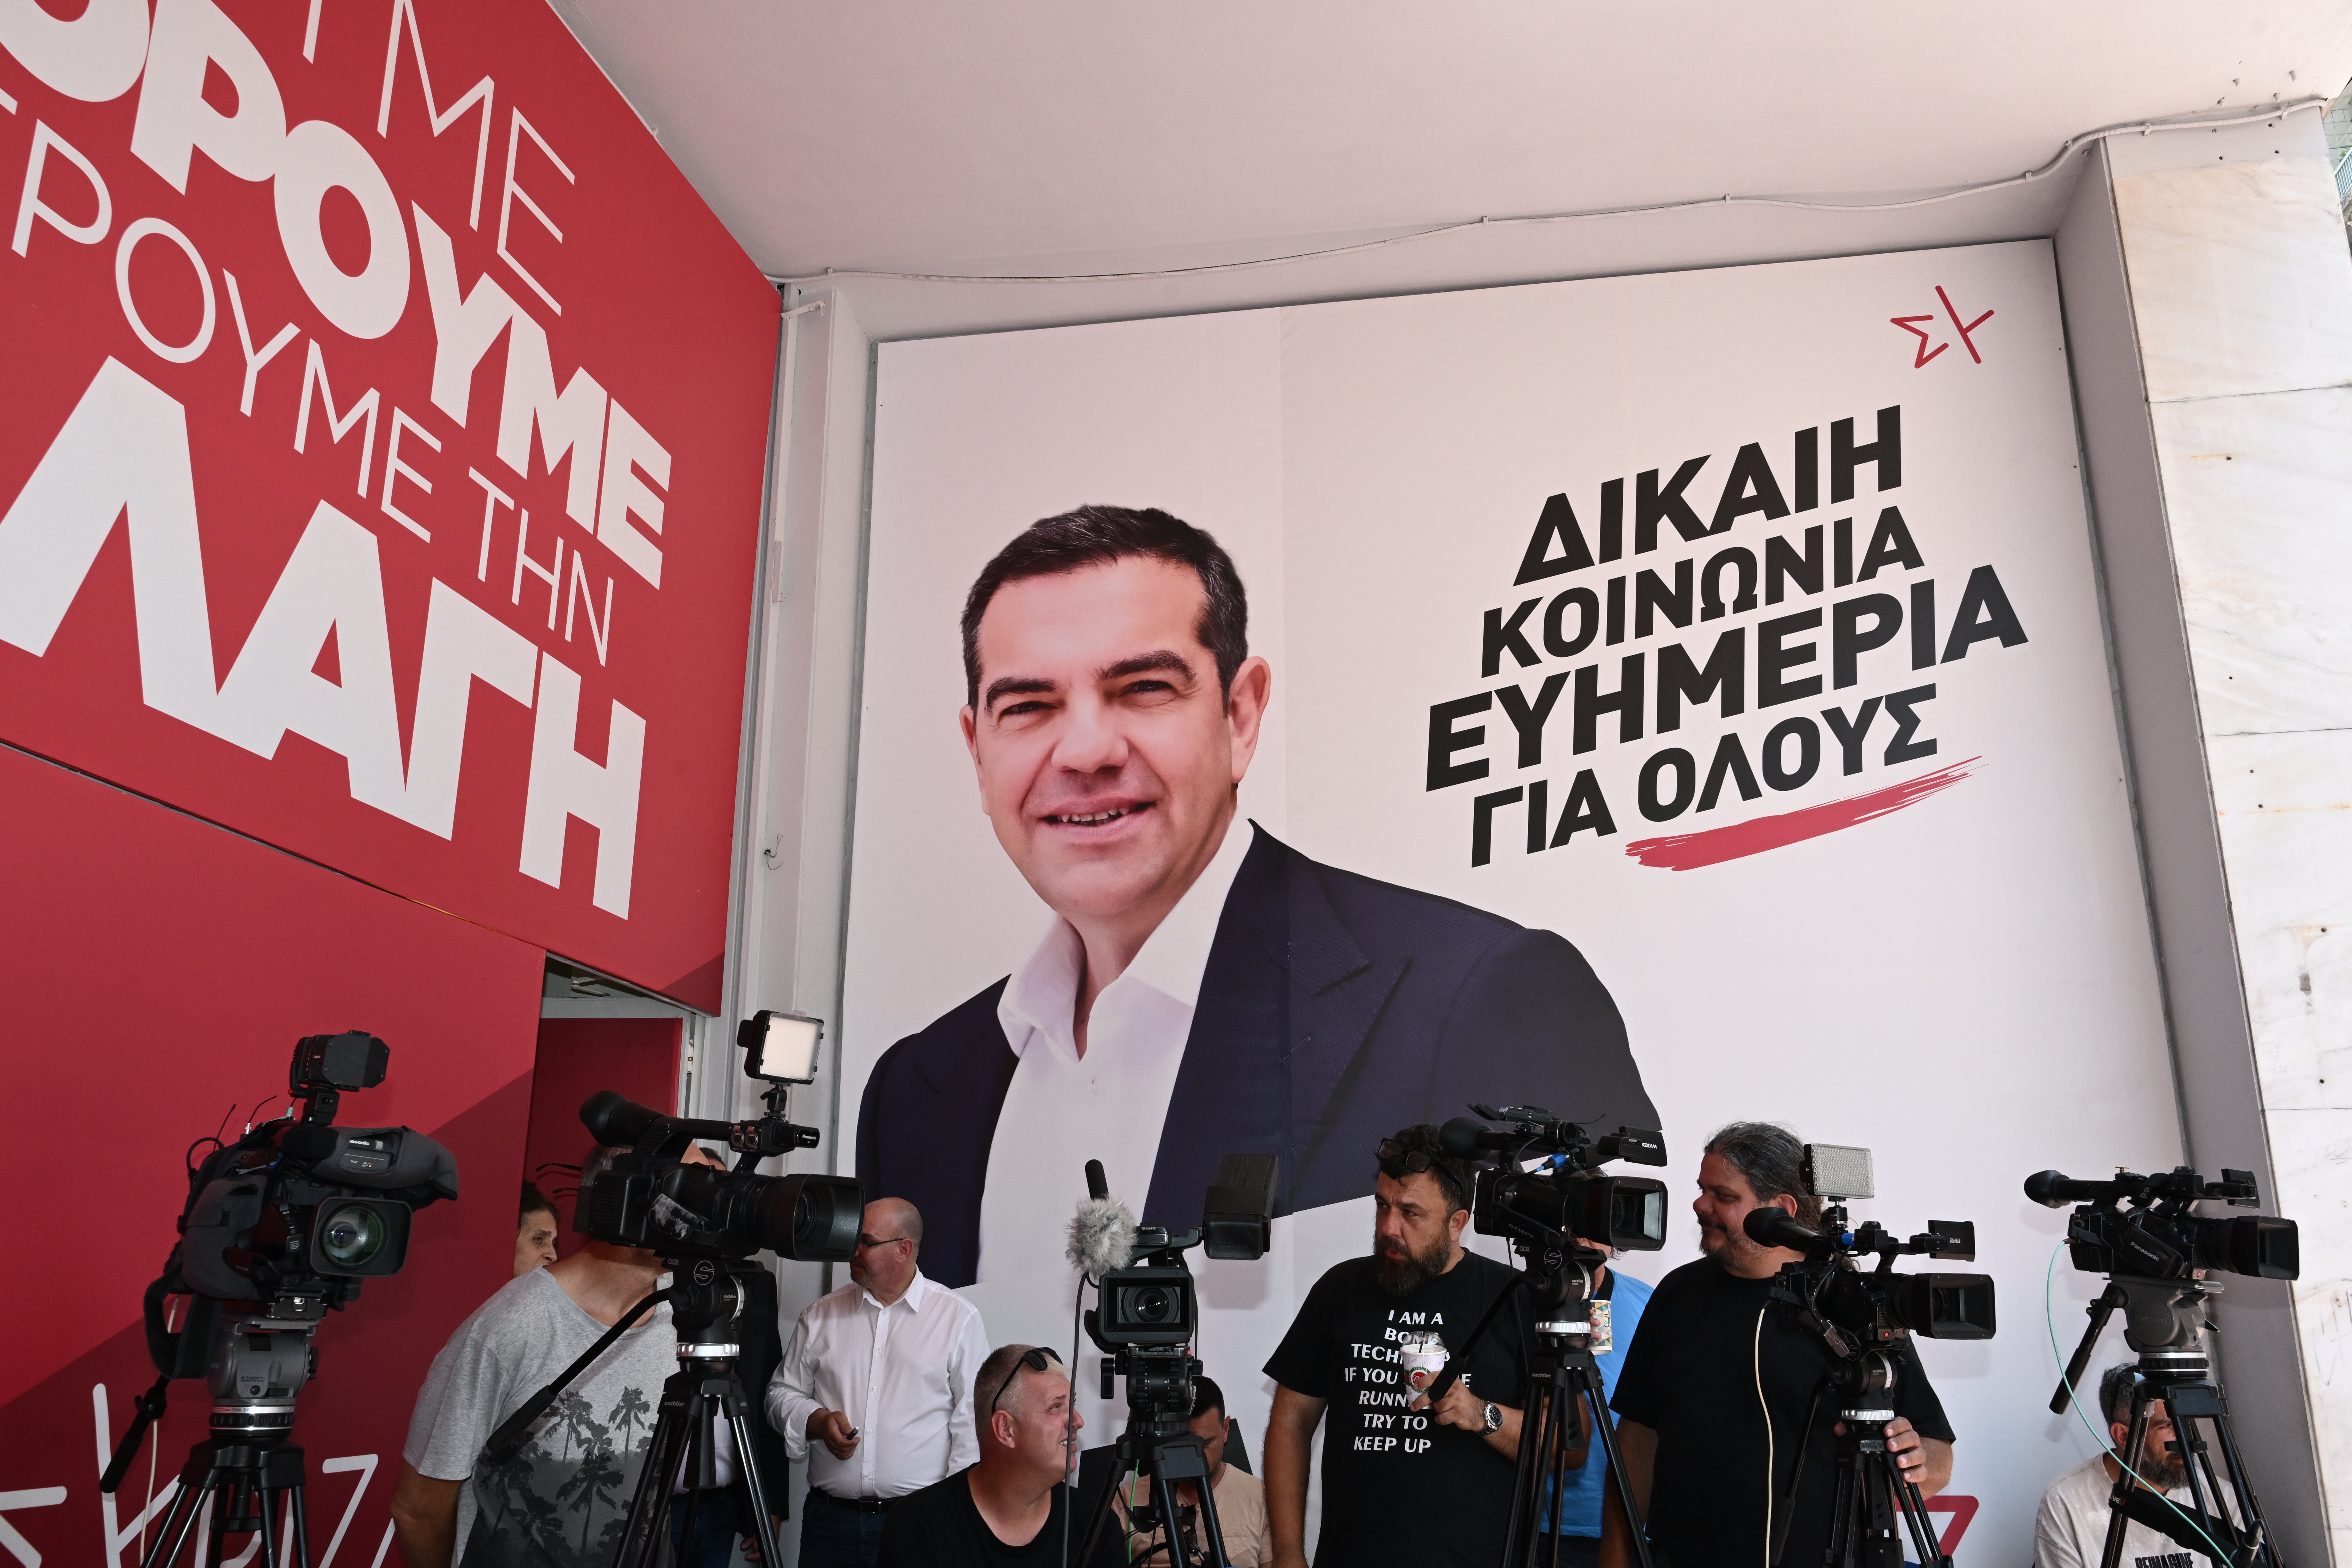 ΣΥΡΙΖΑ: Εκλογή προέδρου από τη βάση του κόμματος στις αρχές Σεπτεμβρίου – Ο Σωκράτης Φάμελλος πρόεδρος της ΚΟ